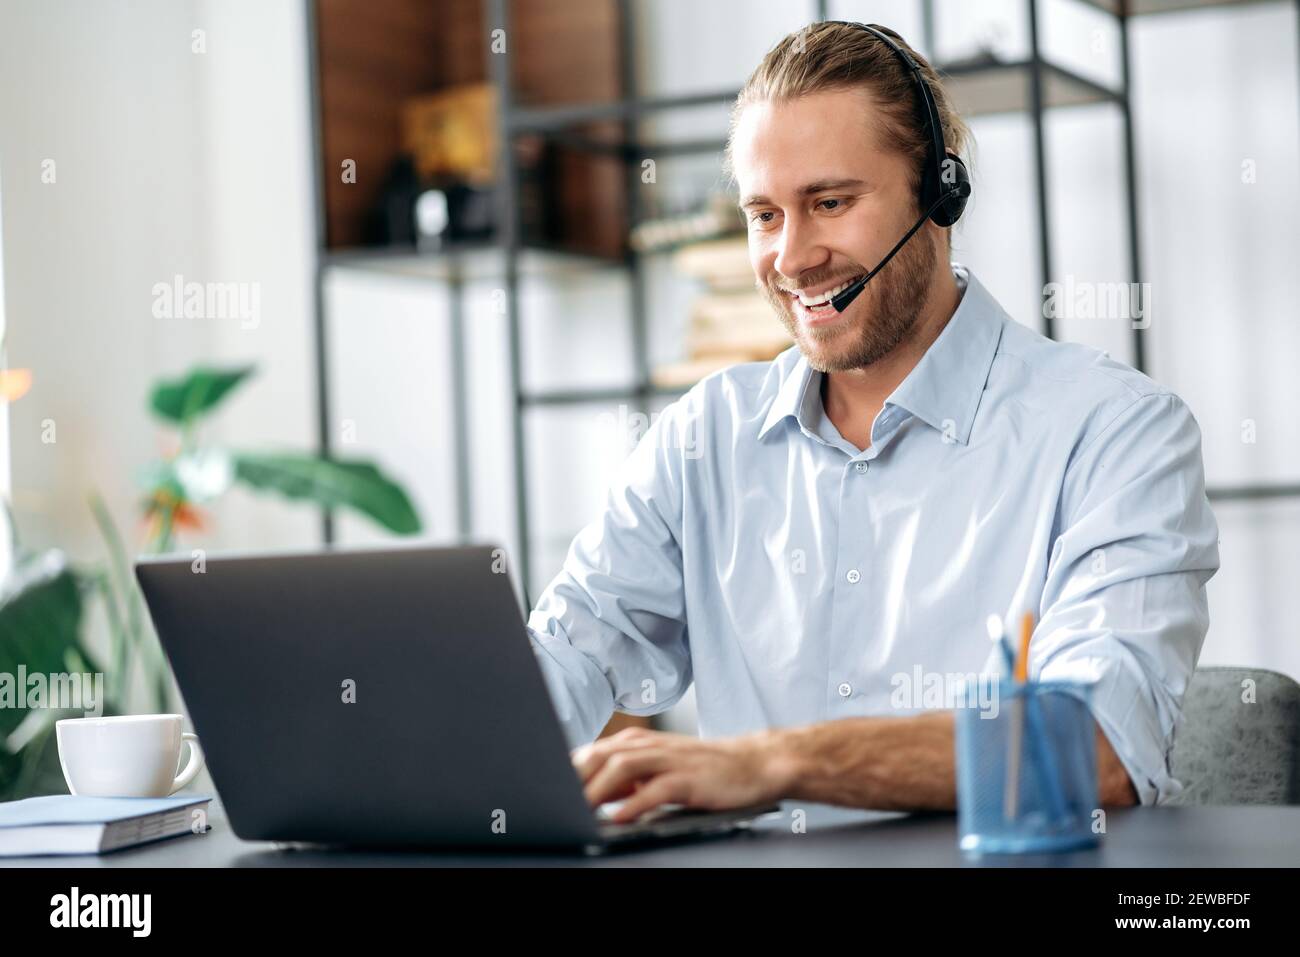 Fröhliche junge Erwachsene männliche Manager oder Call-Center-Mitarbeiter im Headset sieht auf dem Laptop-Bildschirm, mit Online-Business-Meeting. Erfolgreicher Mitarbeiter, der online mit Kollegen spricht Stockfoto